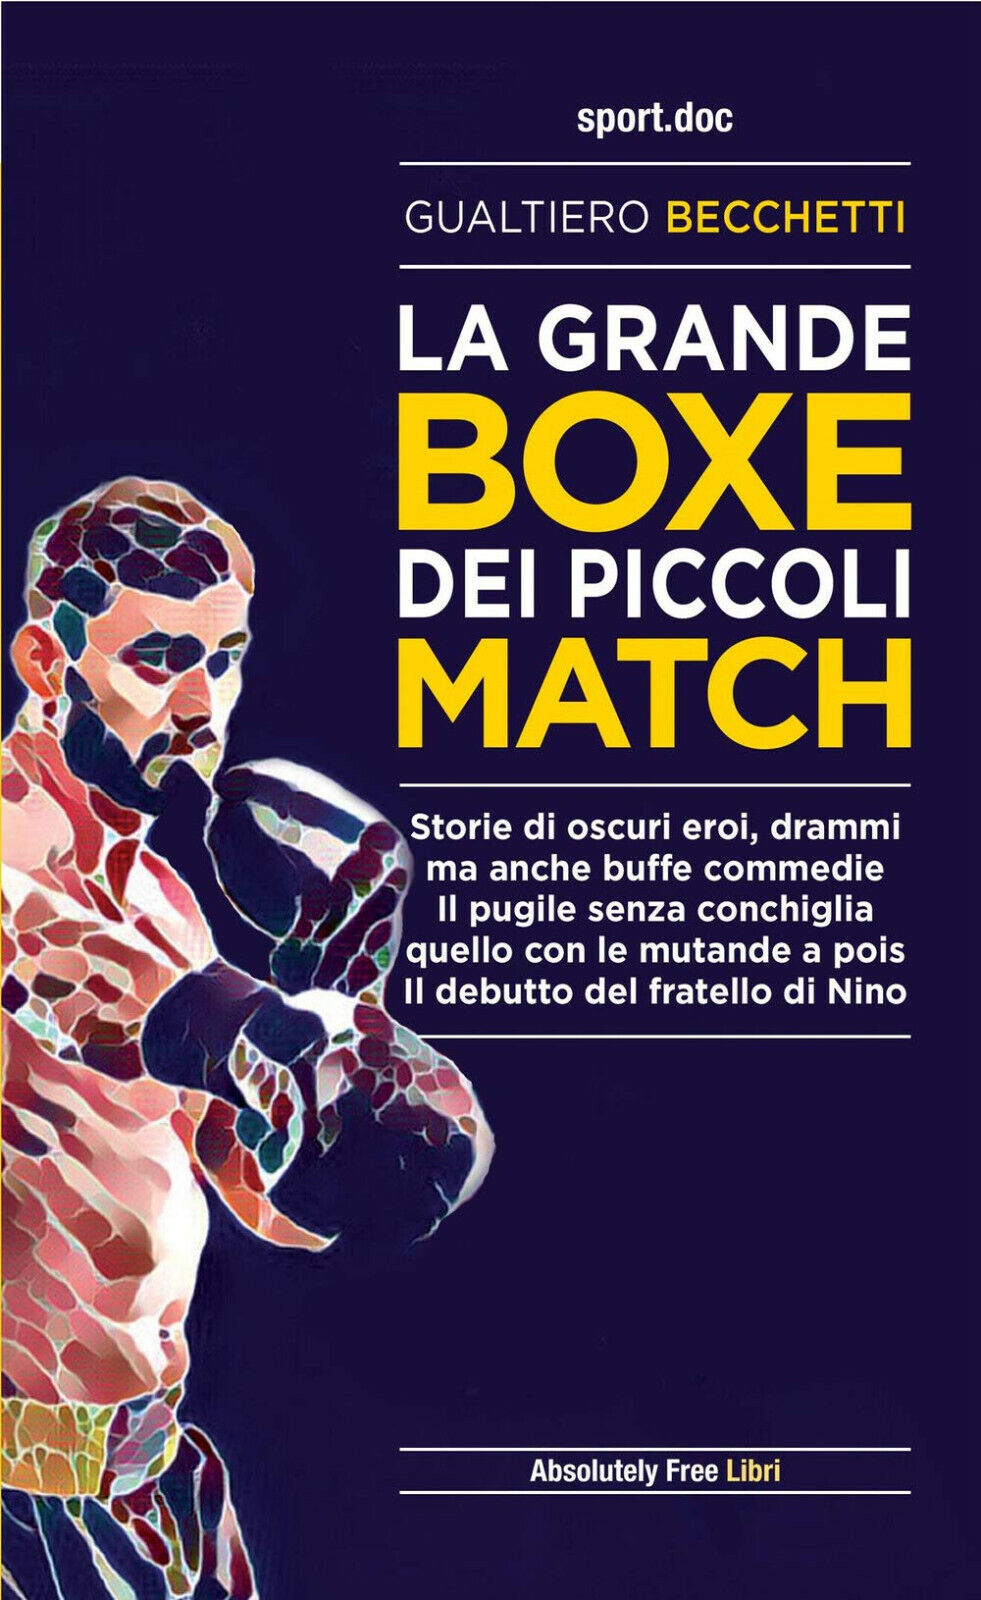 La grande boxe dei piccoli match - Gualtiero Becchetti - Absolutely Free, 2021